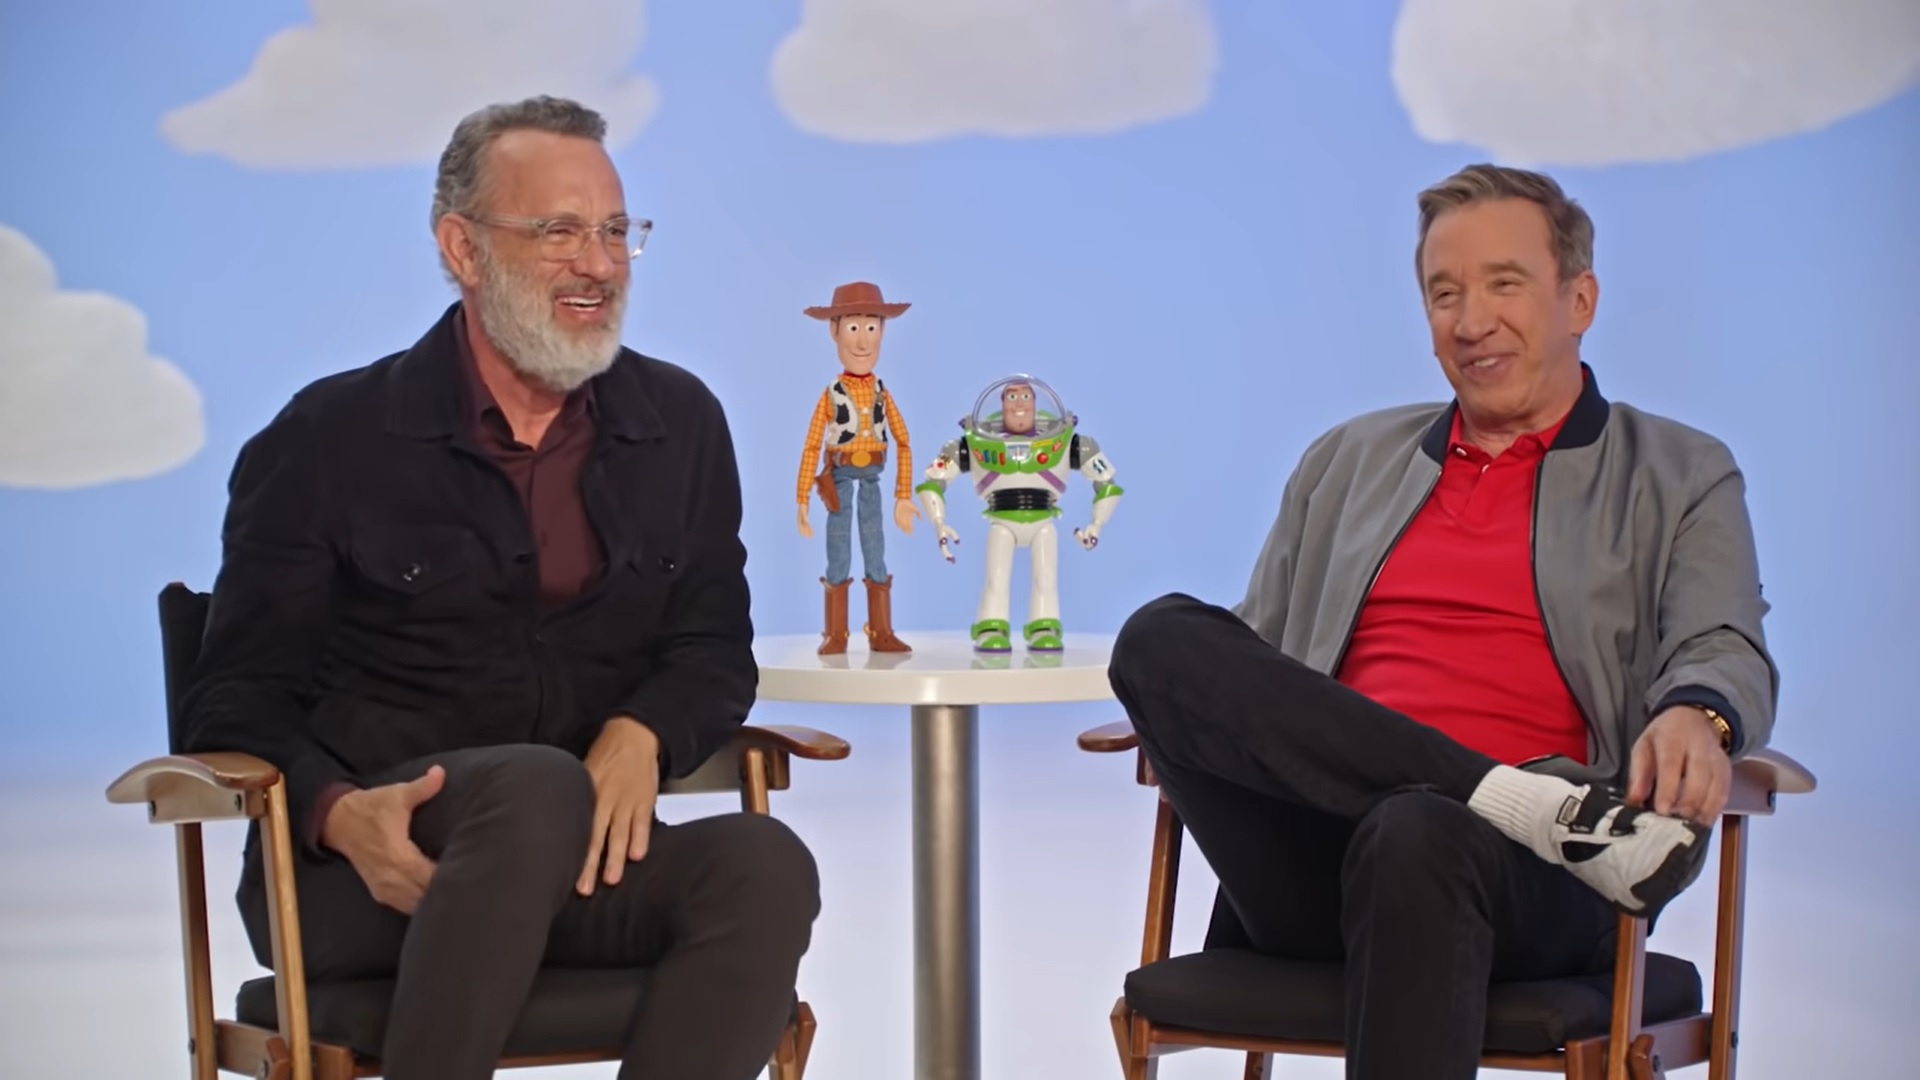 Toy Story 5: Tim Allen e Tom Hanks procurados para novo filme